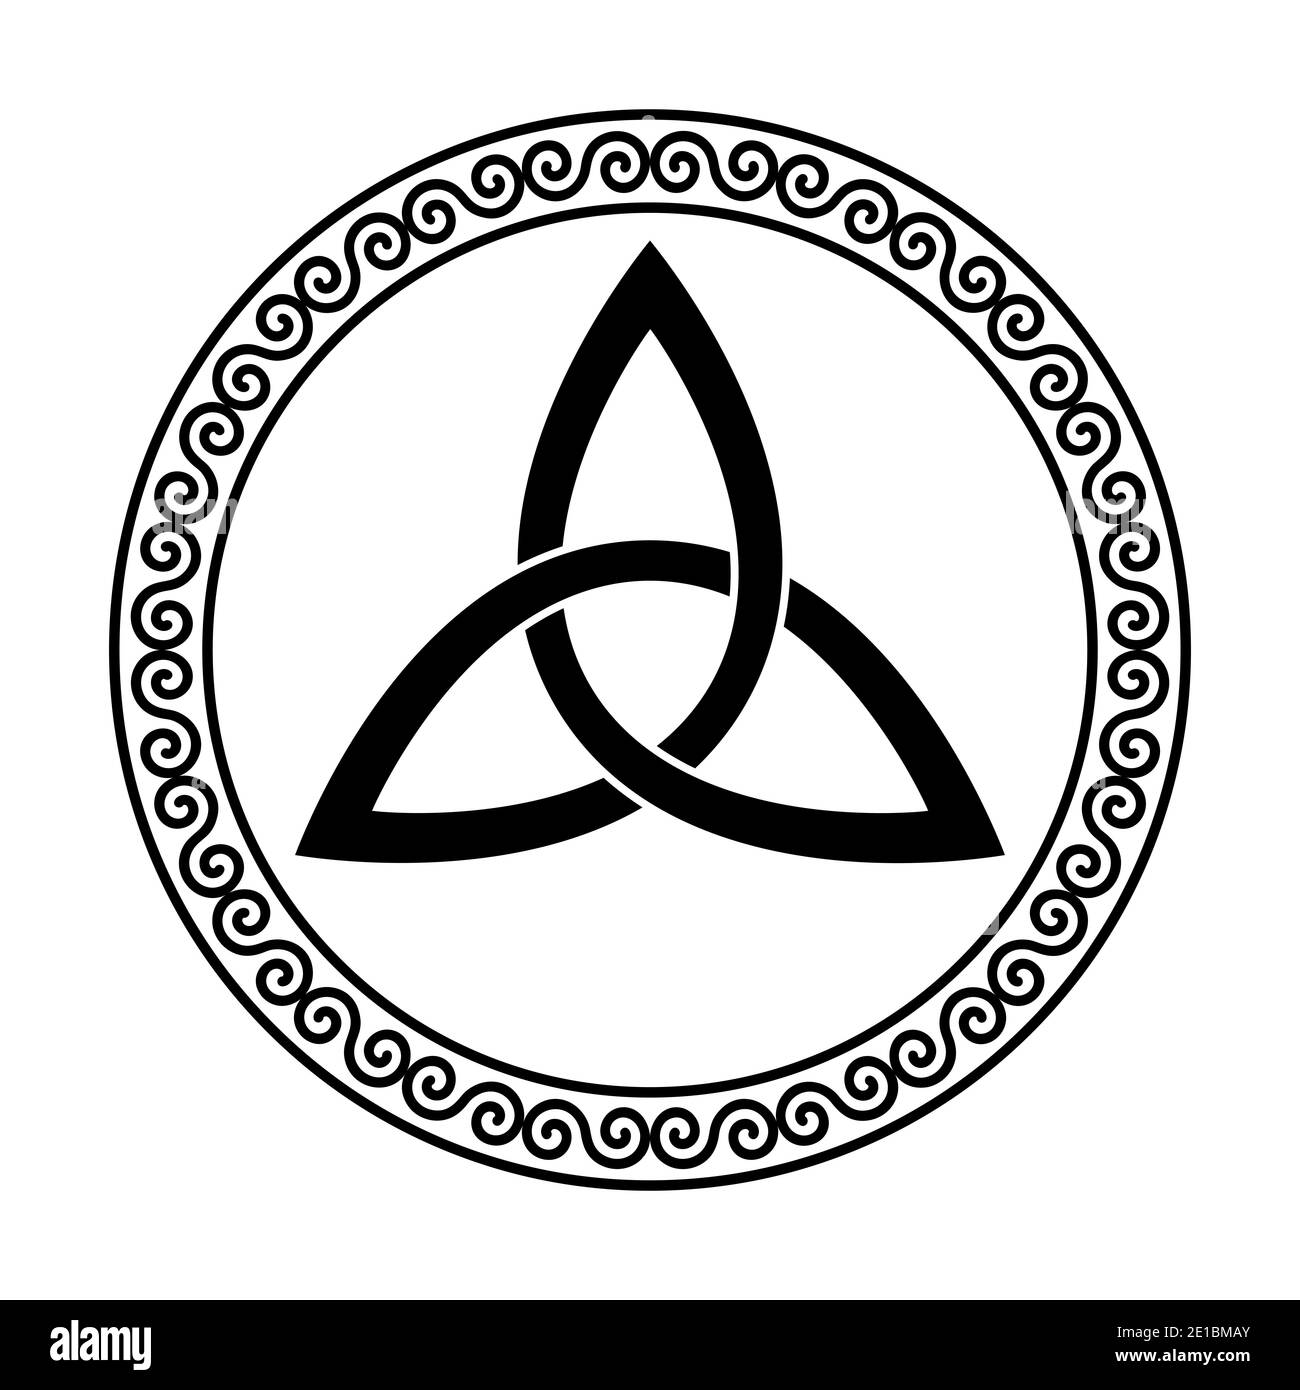 Triquetra all'interno di un telaio a spirale circolare. Il nodo celtico, una figura triangolare, utilizzato nell'antico ornamento cristiano, circondato da un bordo decorativo Foto Stock